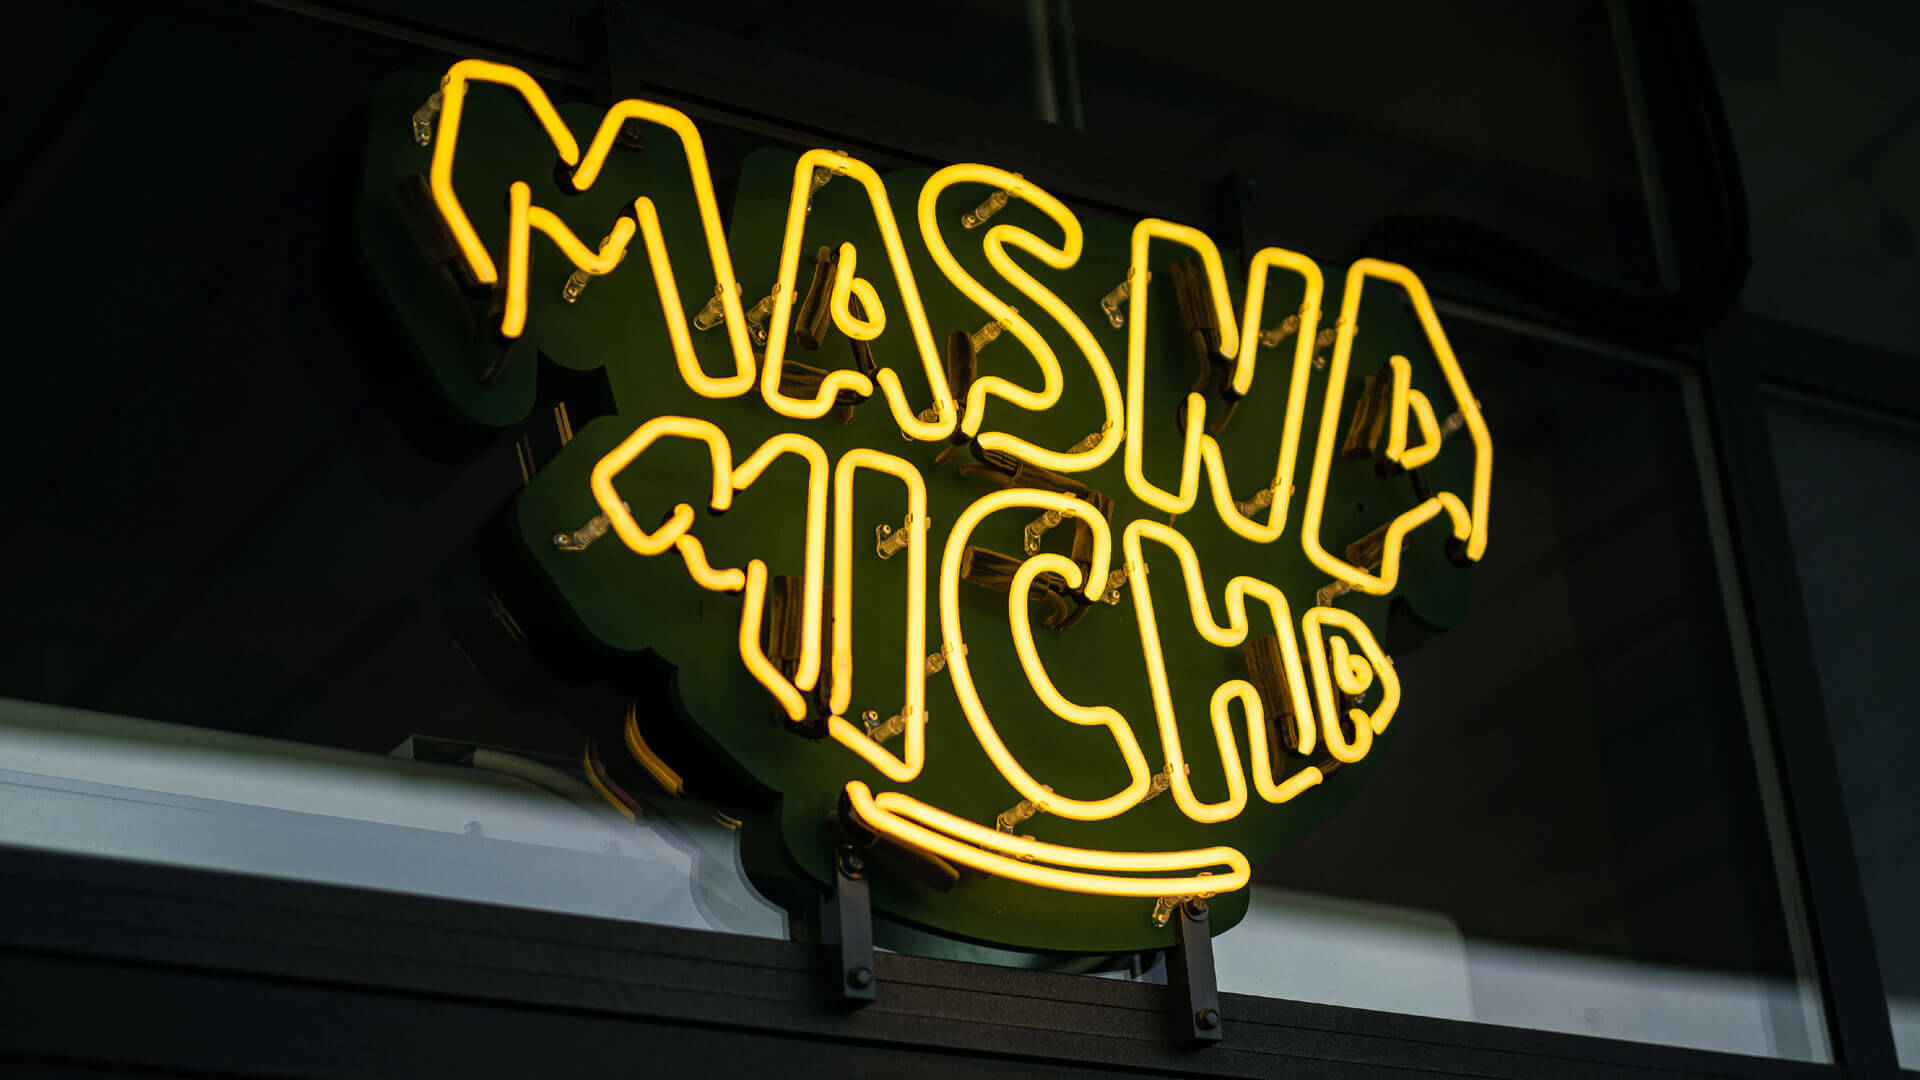 Masna Micha - Neonschild für das Restaurant Masna Micha in Danzig, außerhalb des Lokals.